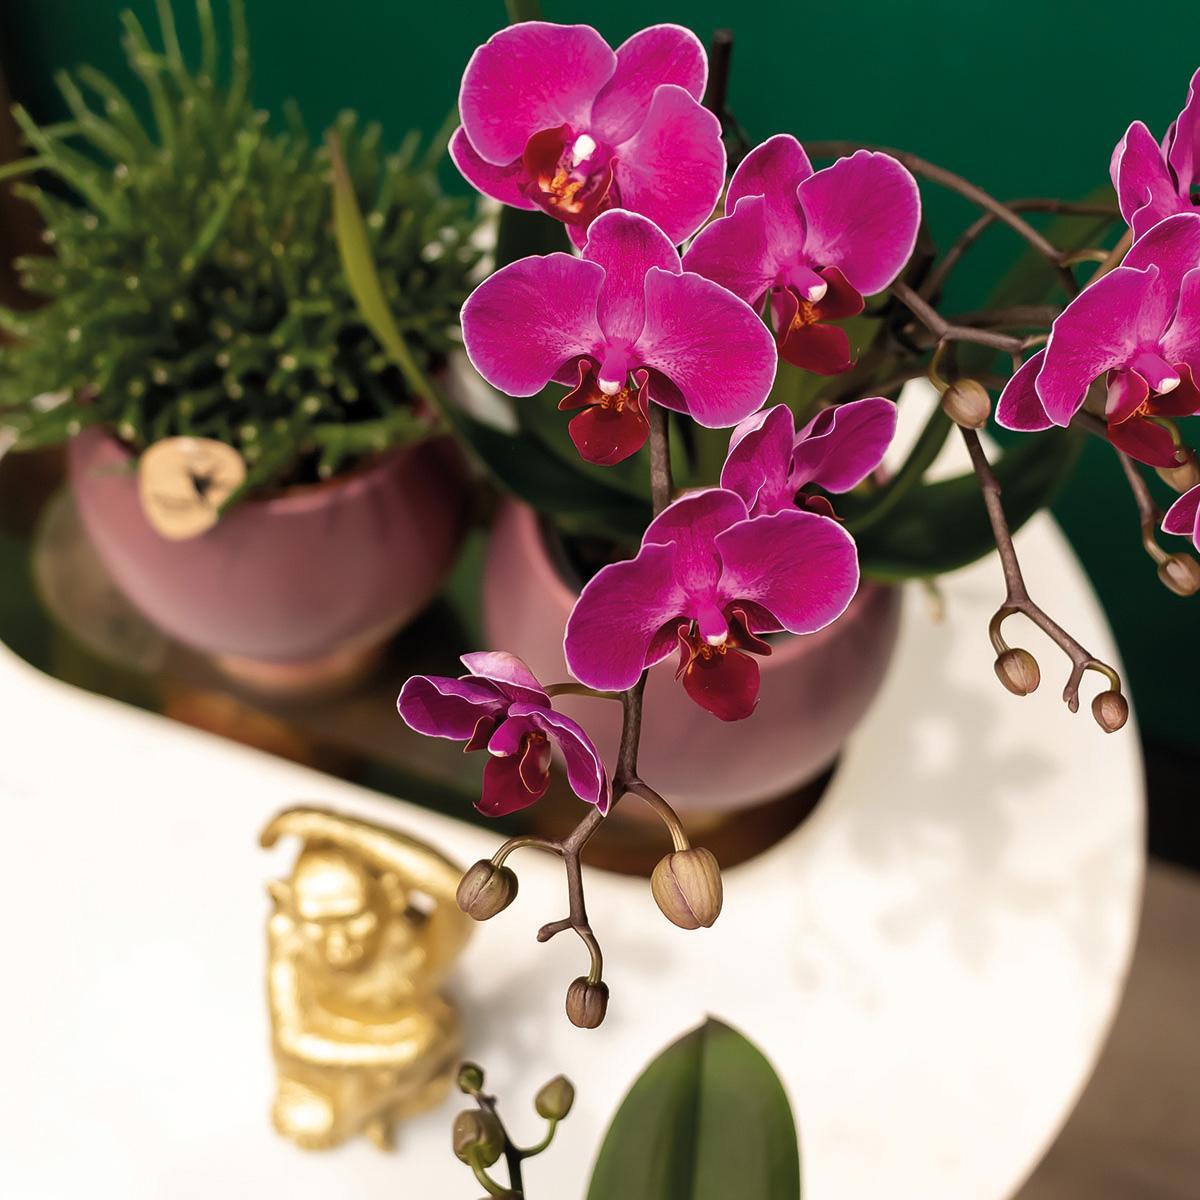 Kolibri Orchids | COMBI DEAL van 2 paarse phalaenopsis orchideeën - Morelia - potmaat Ø9cm | bloeiende kamerplant - vers van de kweker